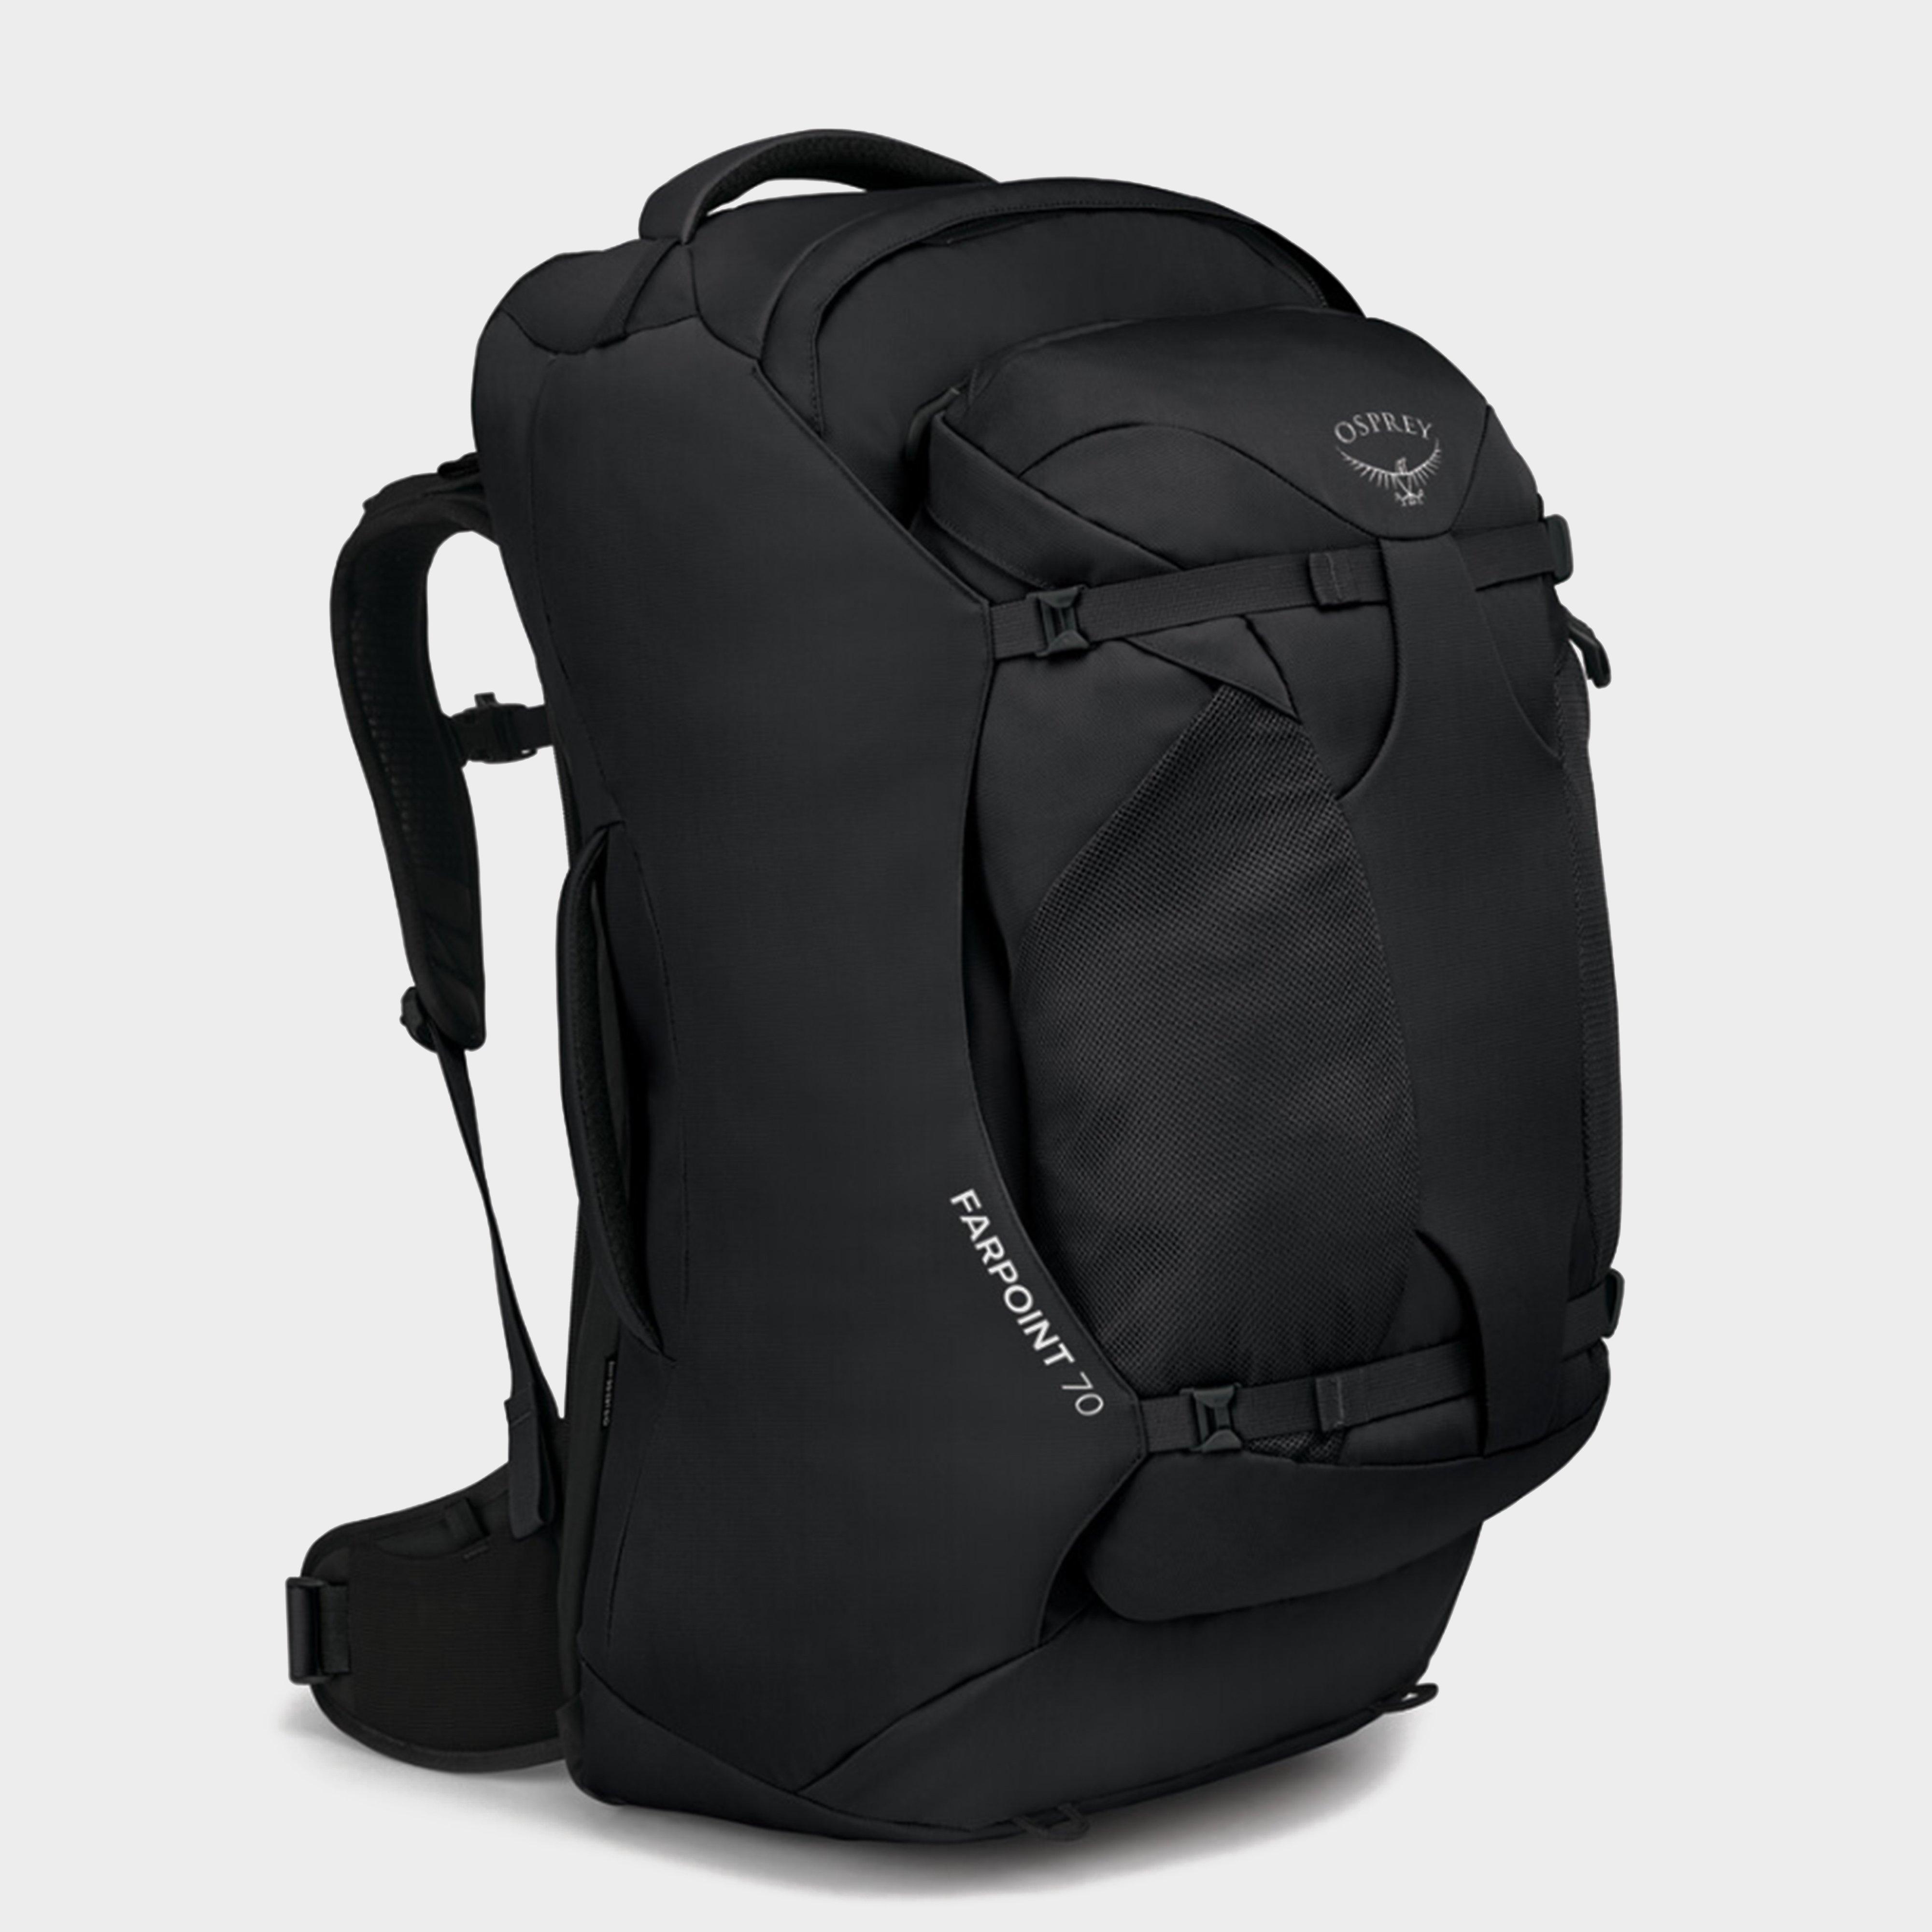 Osprey Osprey Farpoint 70 Litre Travel Backpack - Black, Black